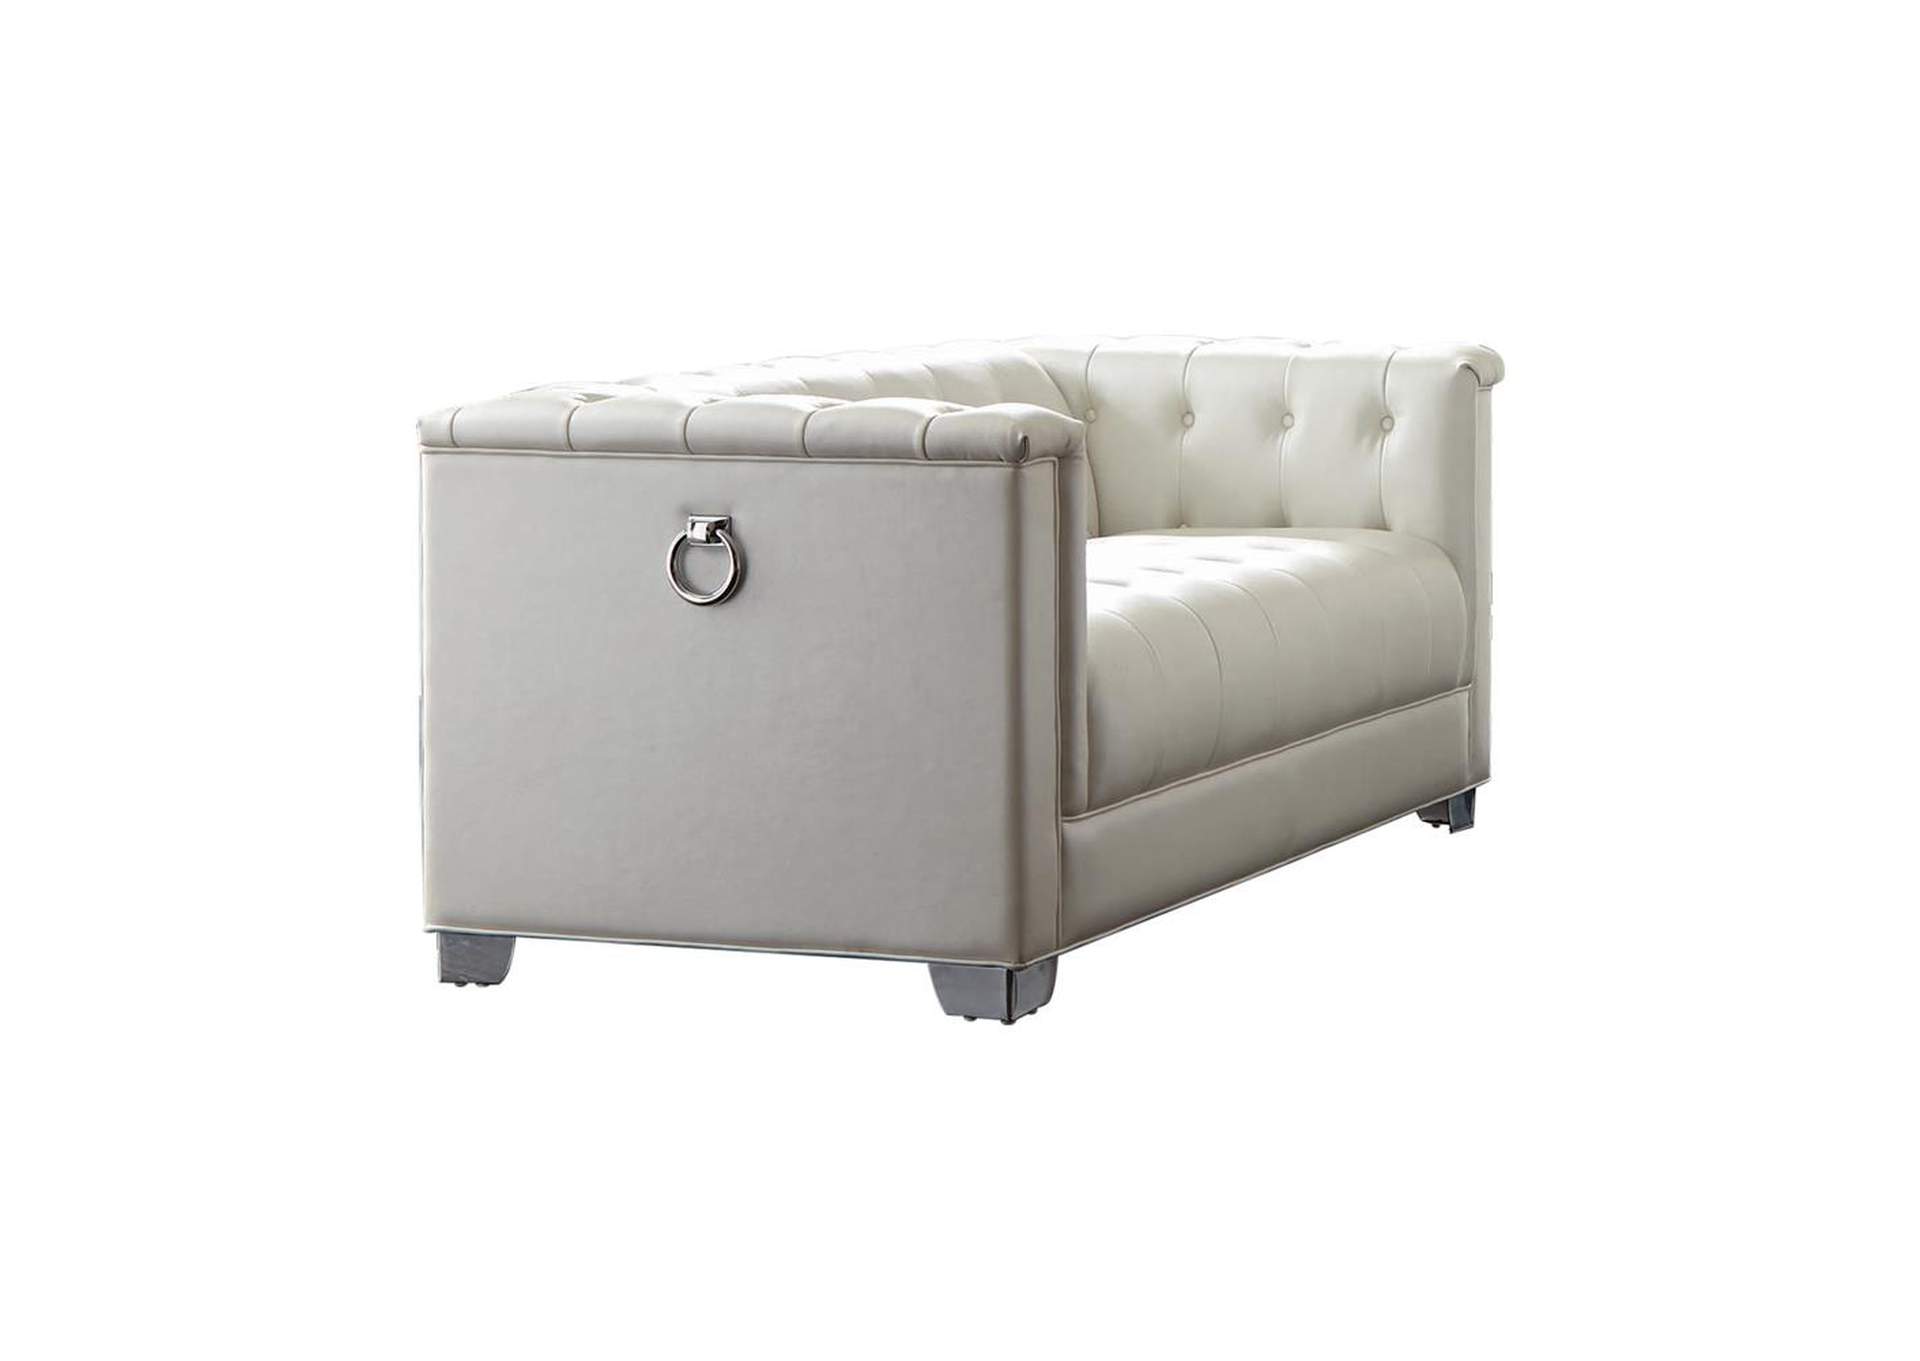 Silver Chaviano Contemporary White Sofa,Coaster Furniture